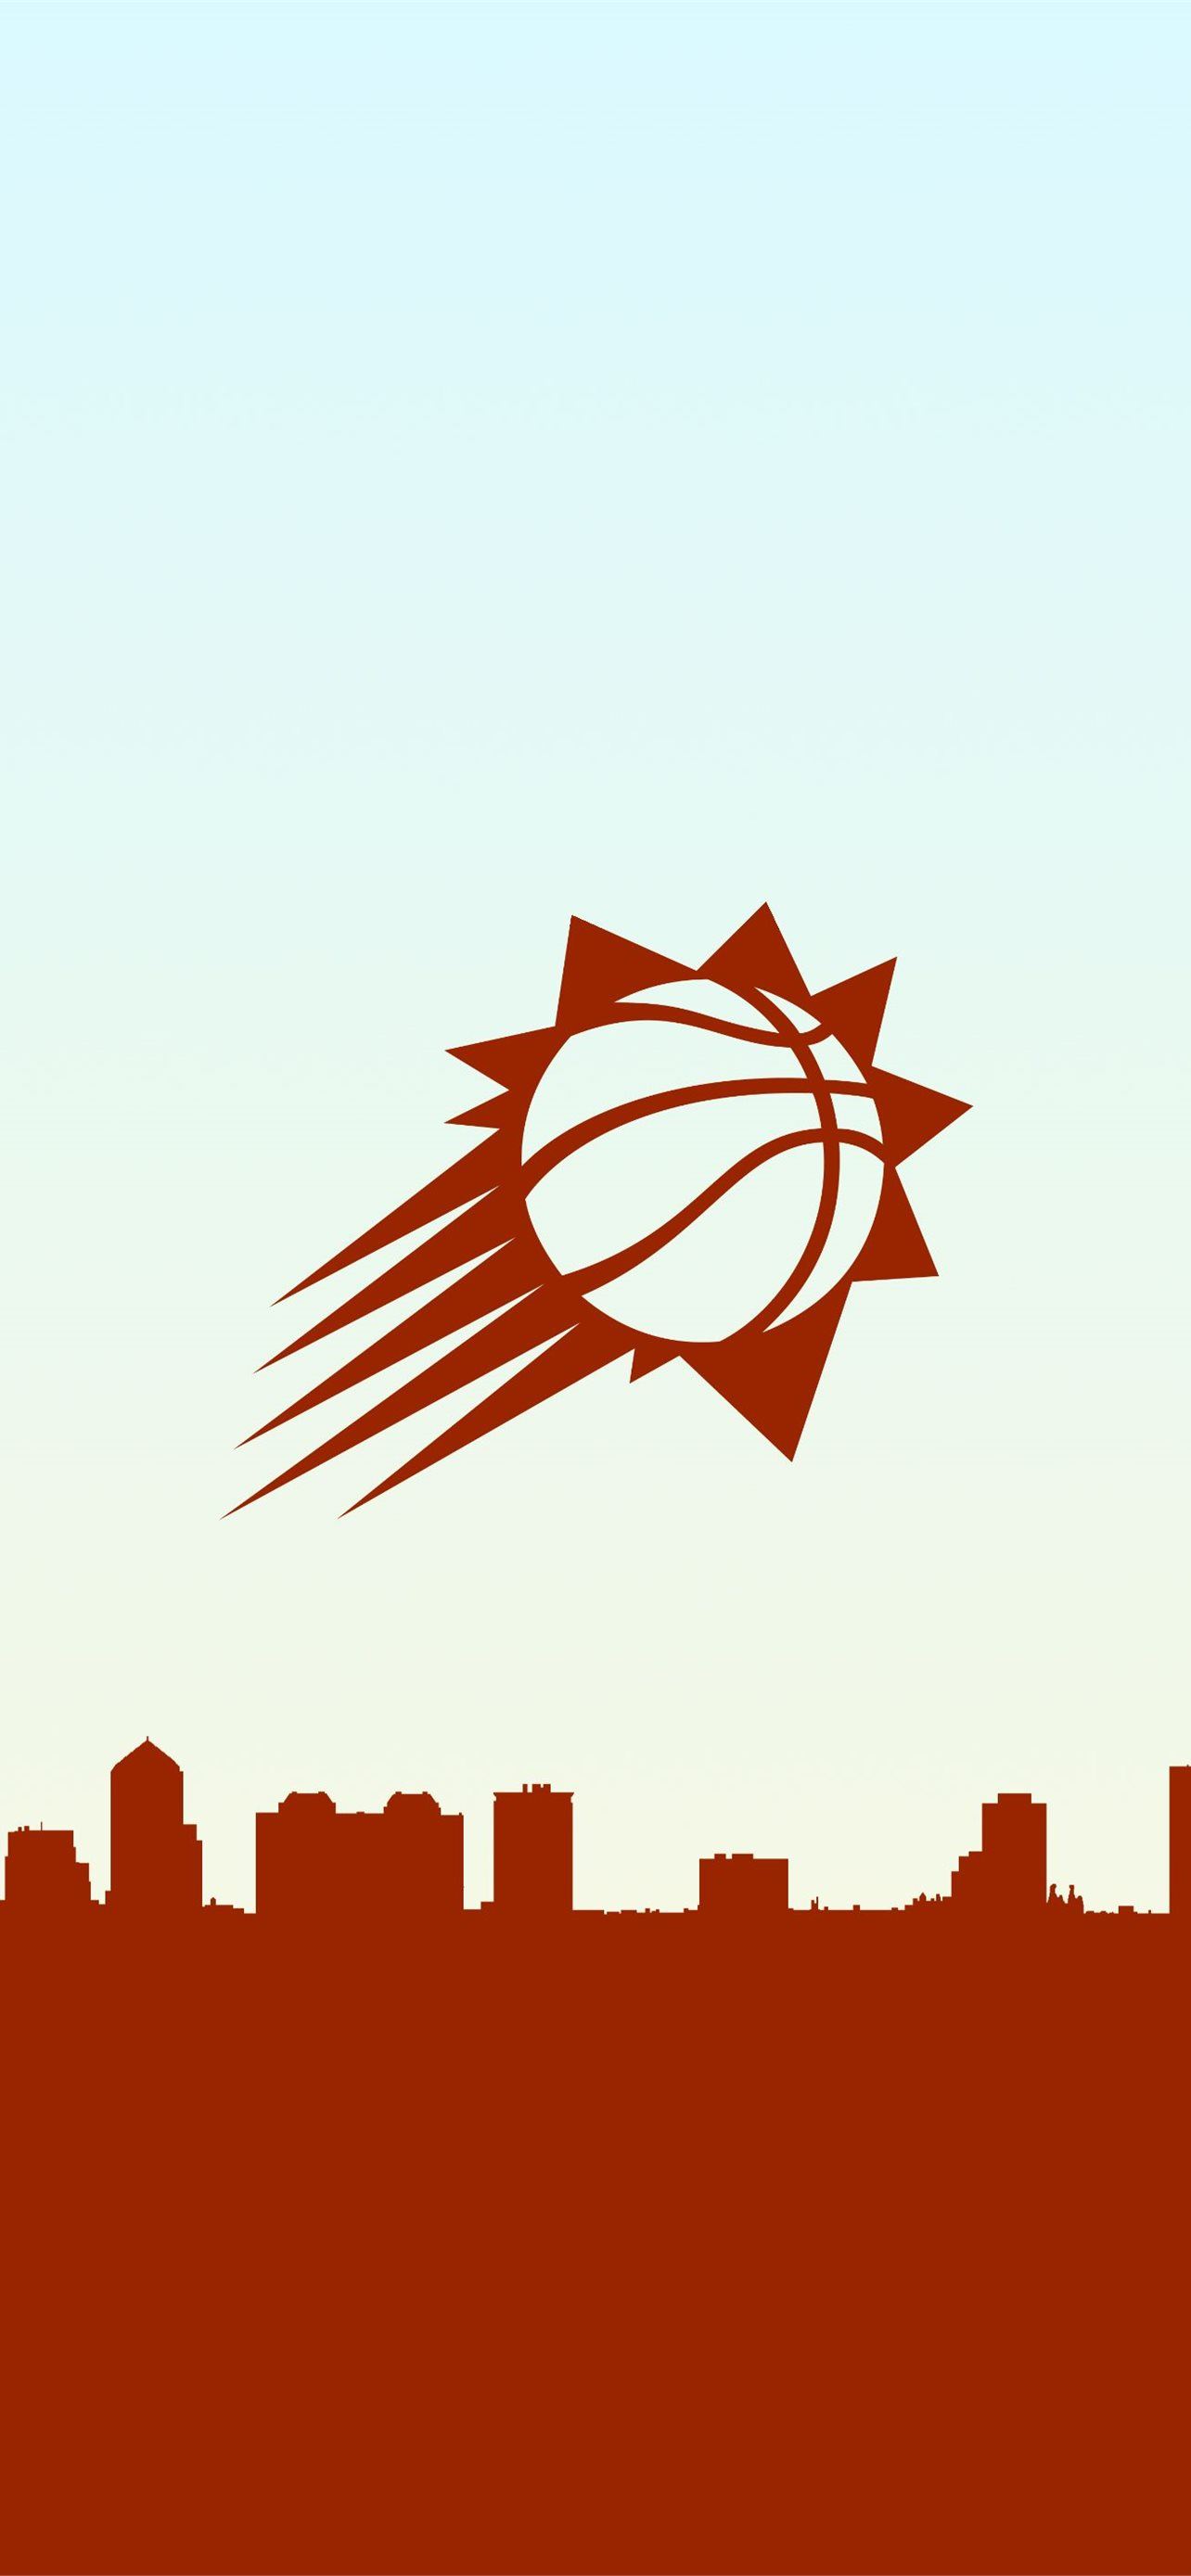 Phoenix Suns Wallpaper Iphone 11 - Hd Wallpaper Basketball Nba Phoenix